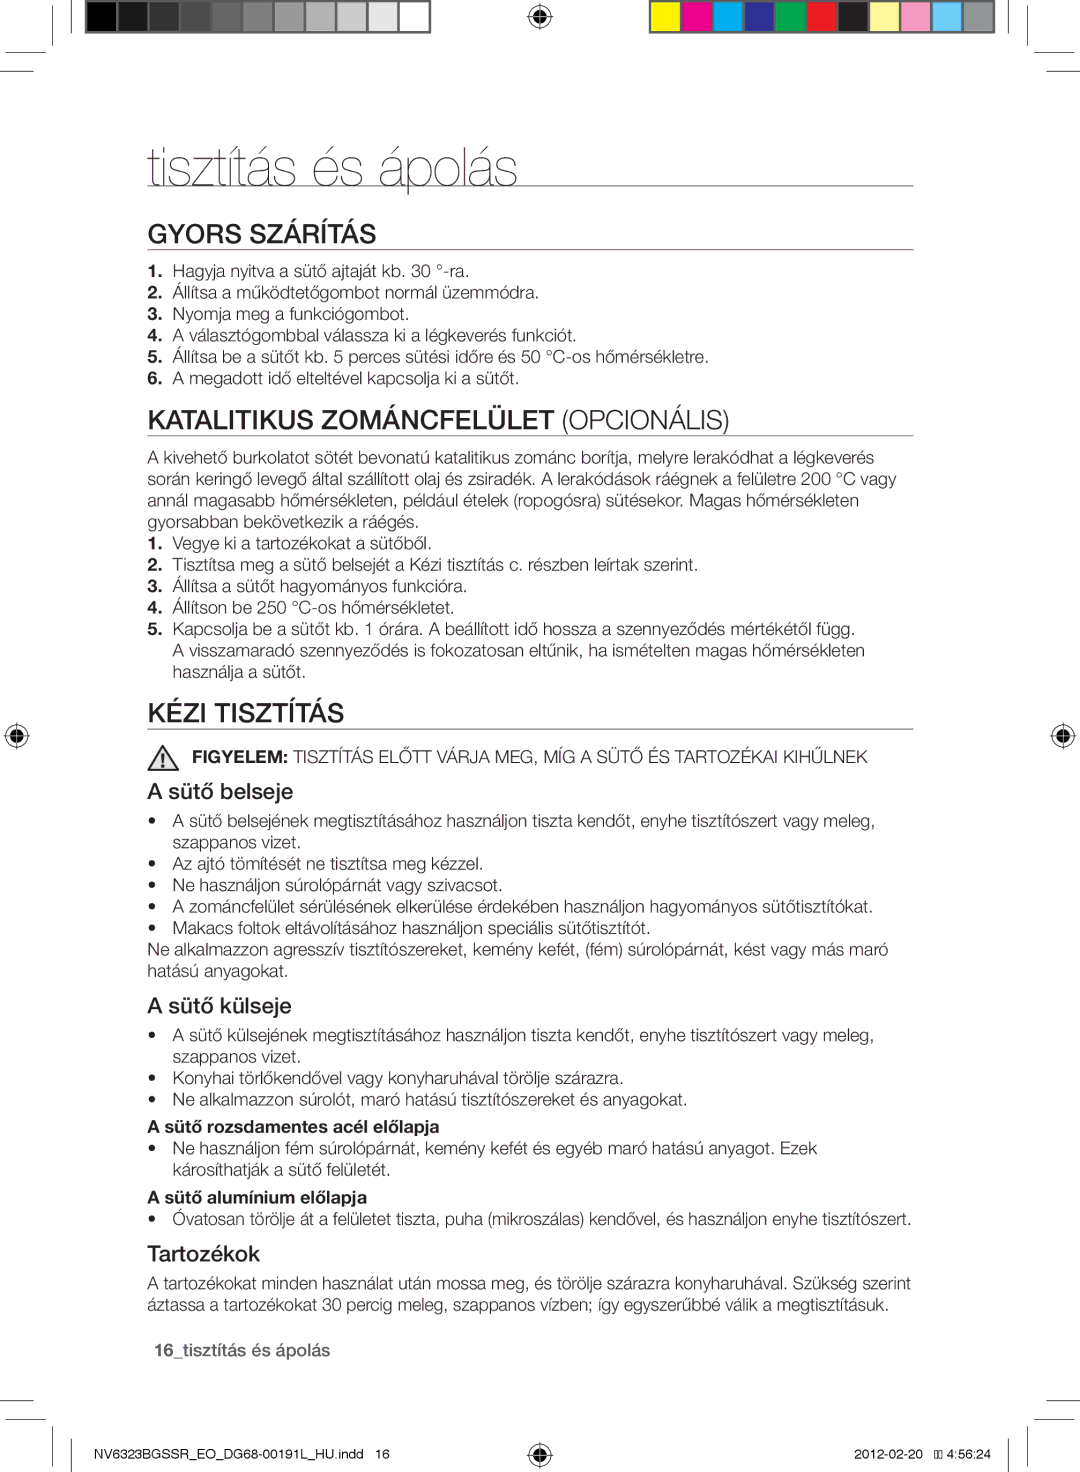 Samsung NV6353BGSSR/EO manual Tisztítás és ápolás, Gyors szárítás, Katalitikus zománcfelület opcionális, Kézi tisztítás 